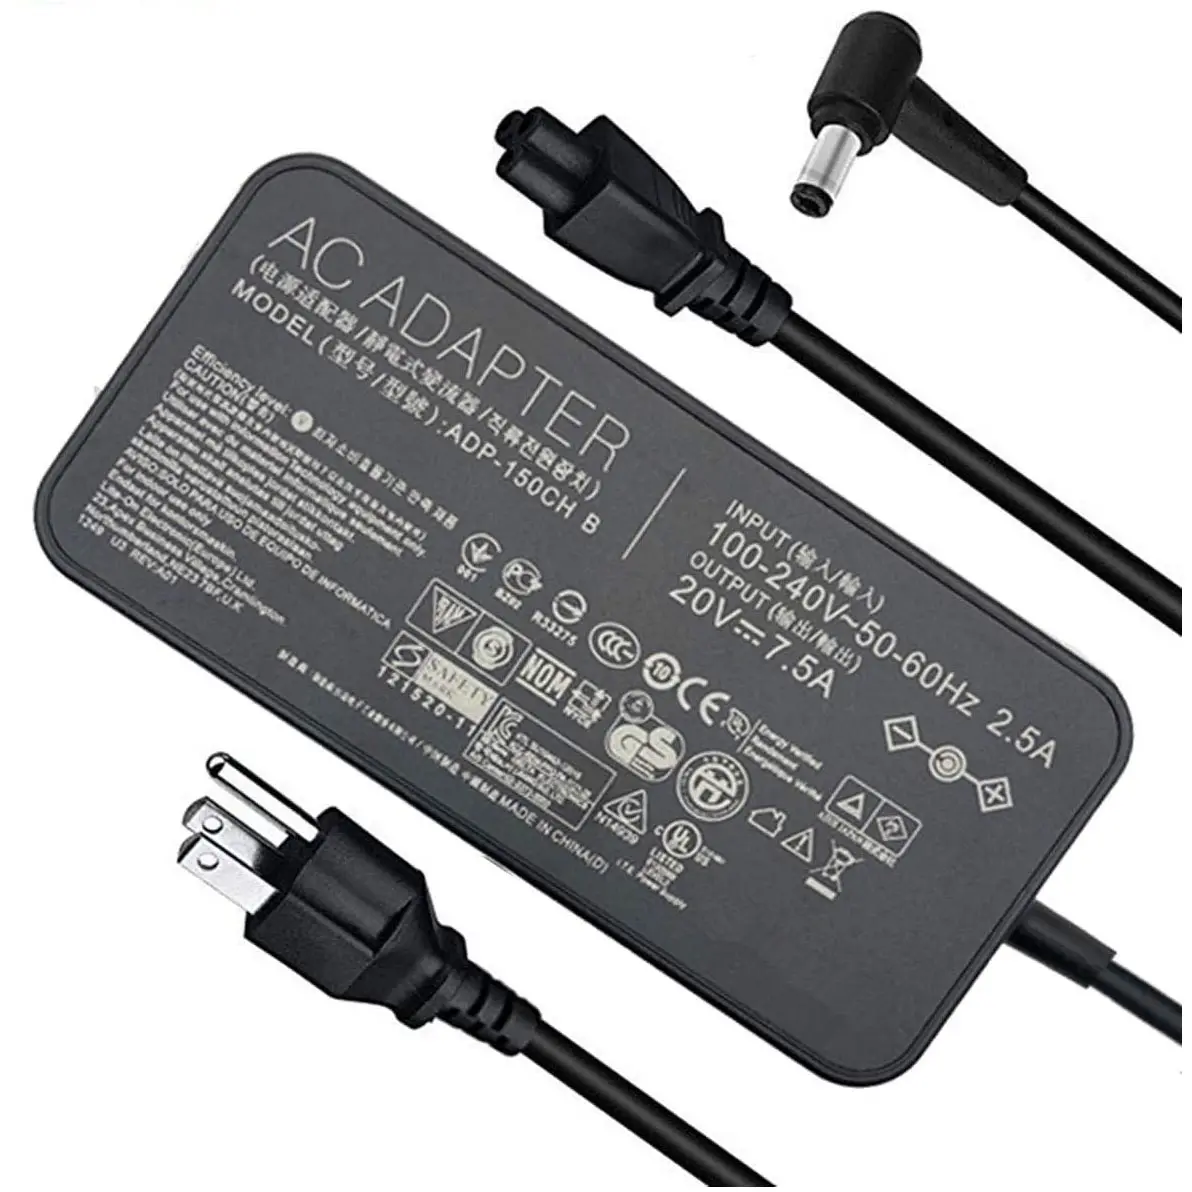 Substituição do carregador do adaptador AC 20V 7.5A 150W para Asus ADP-150CH B ADP-150CH BB A18-150P1A 0A001-00081500